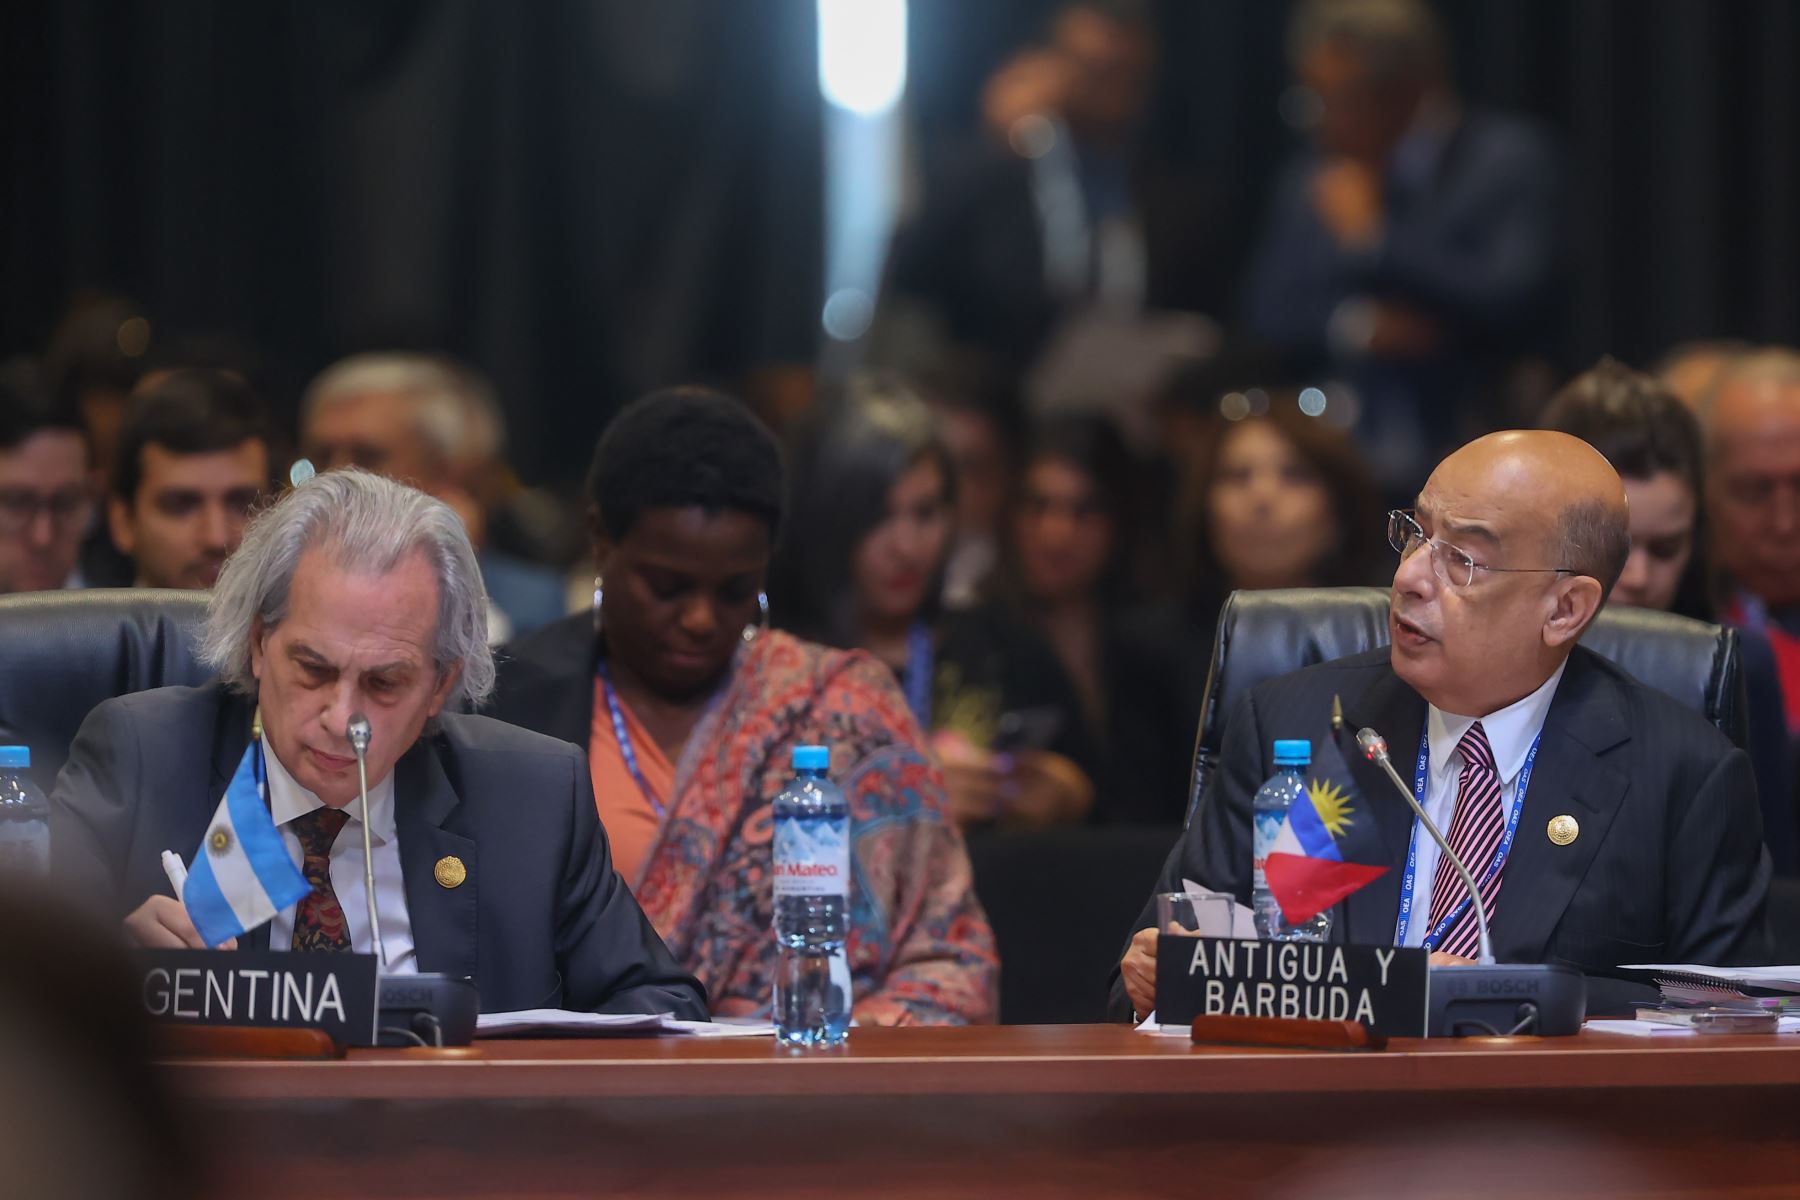 Con la participación de las delegaciones integrantes de la OEA se dio inicio a la primera sesión plenaria en donde el canciller, César Landa, fue elegido para presidir la reunión en representación del Perú.

Foto: ANDINA/Andrés Valle